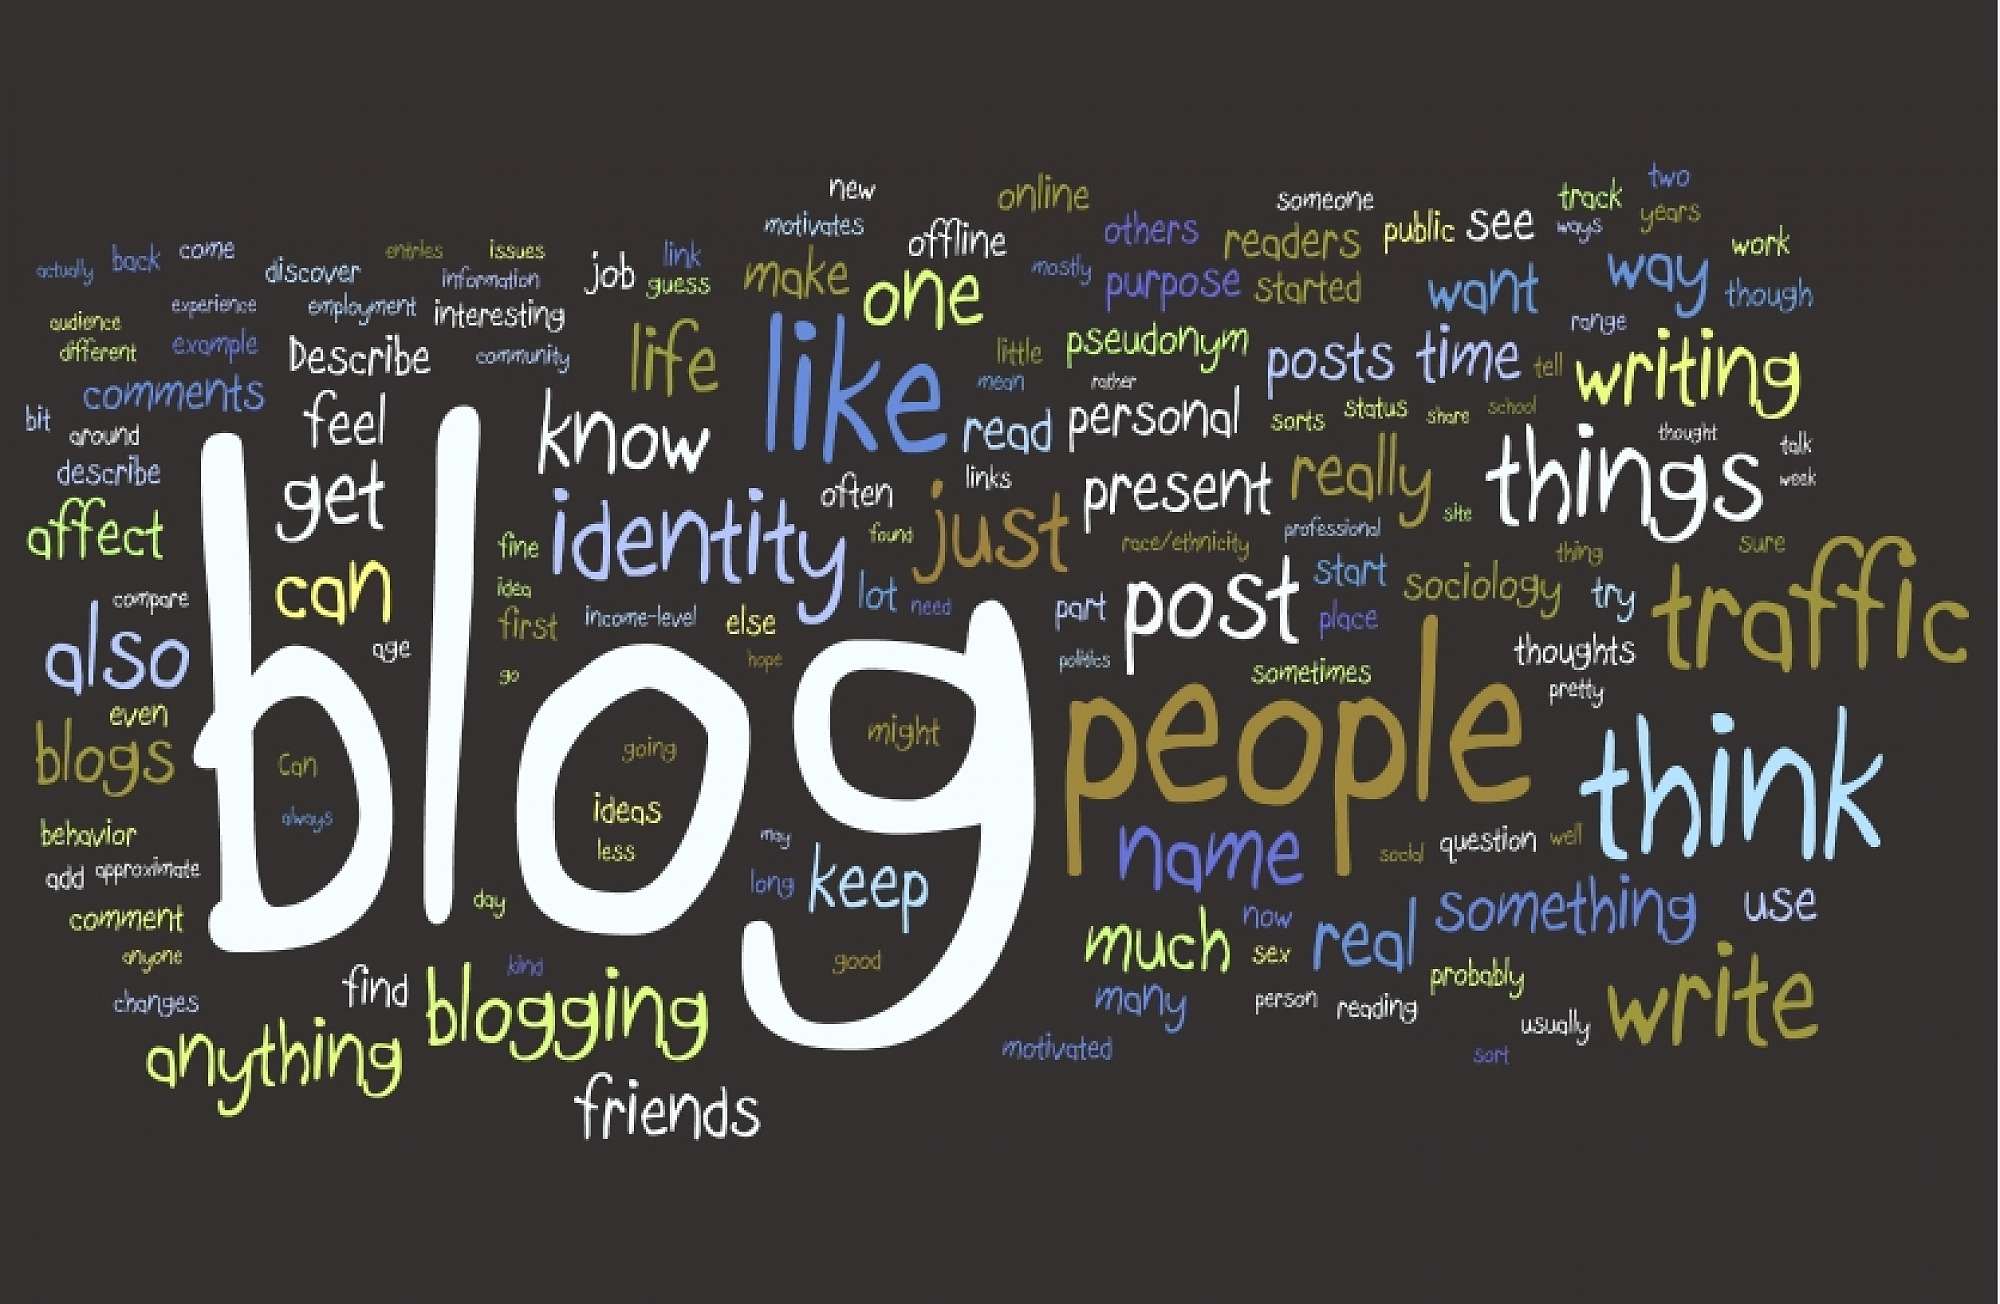 I Blogs Hub